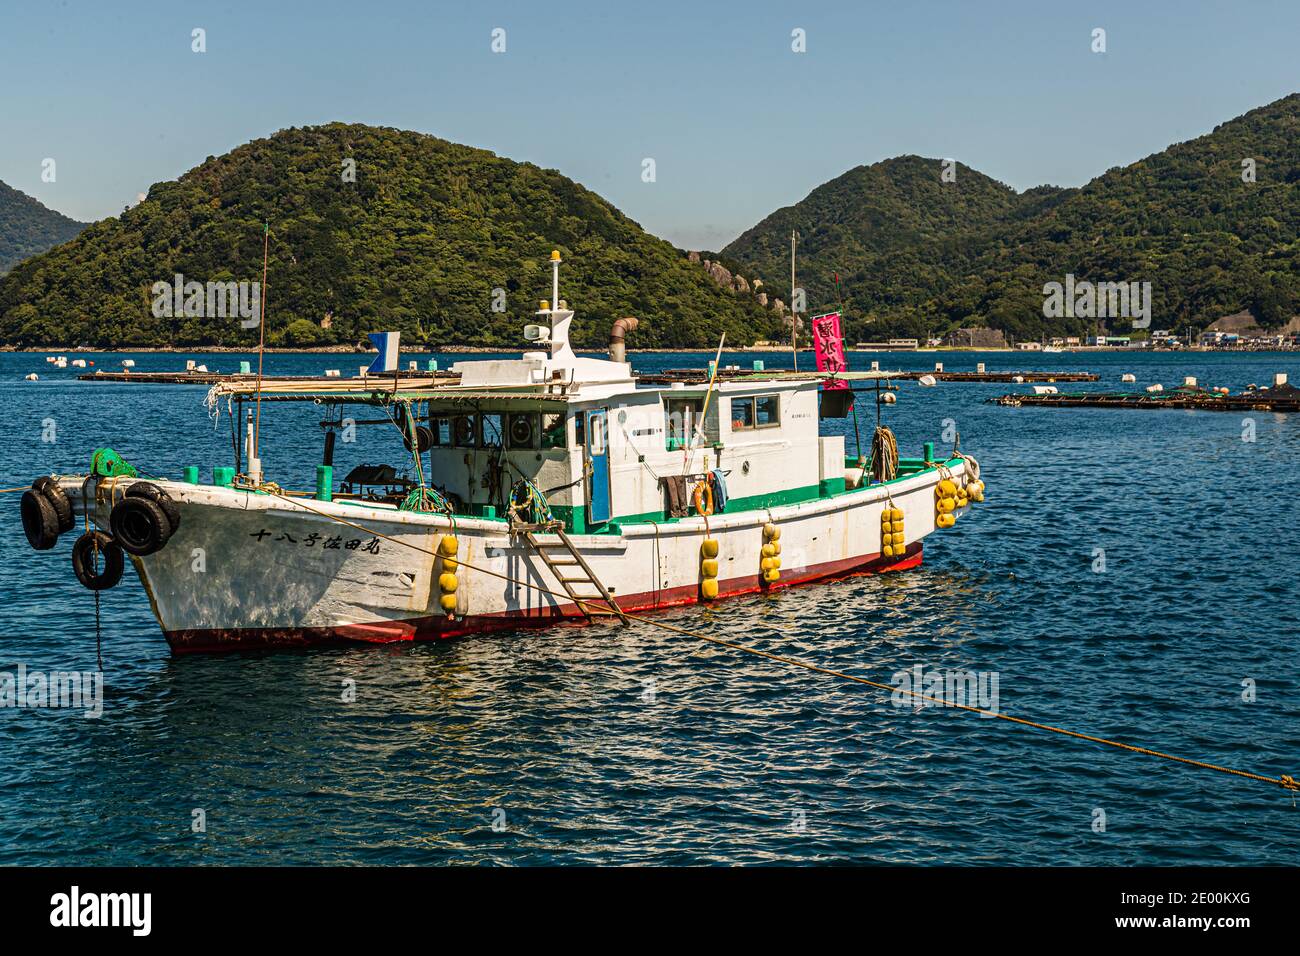 Japanese fishing boat in Numazu, Japan Stock Photo